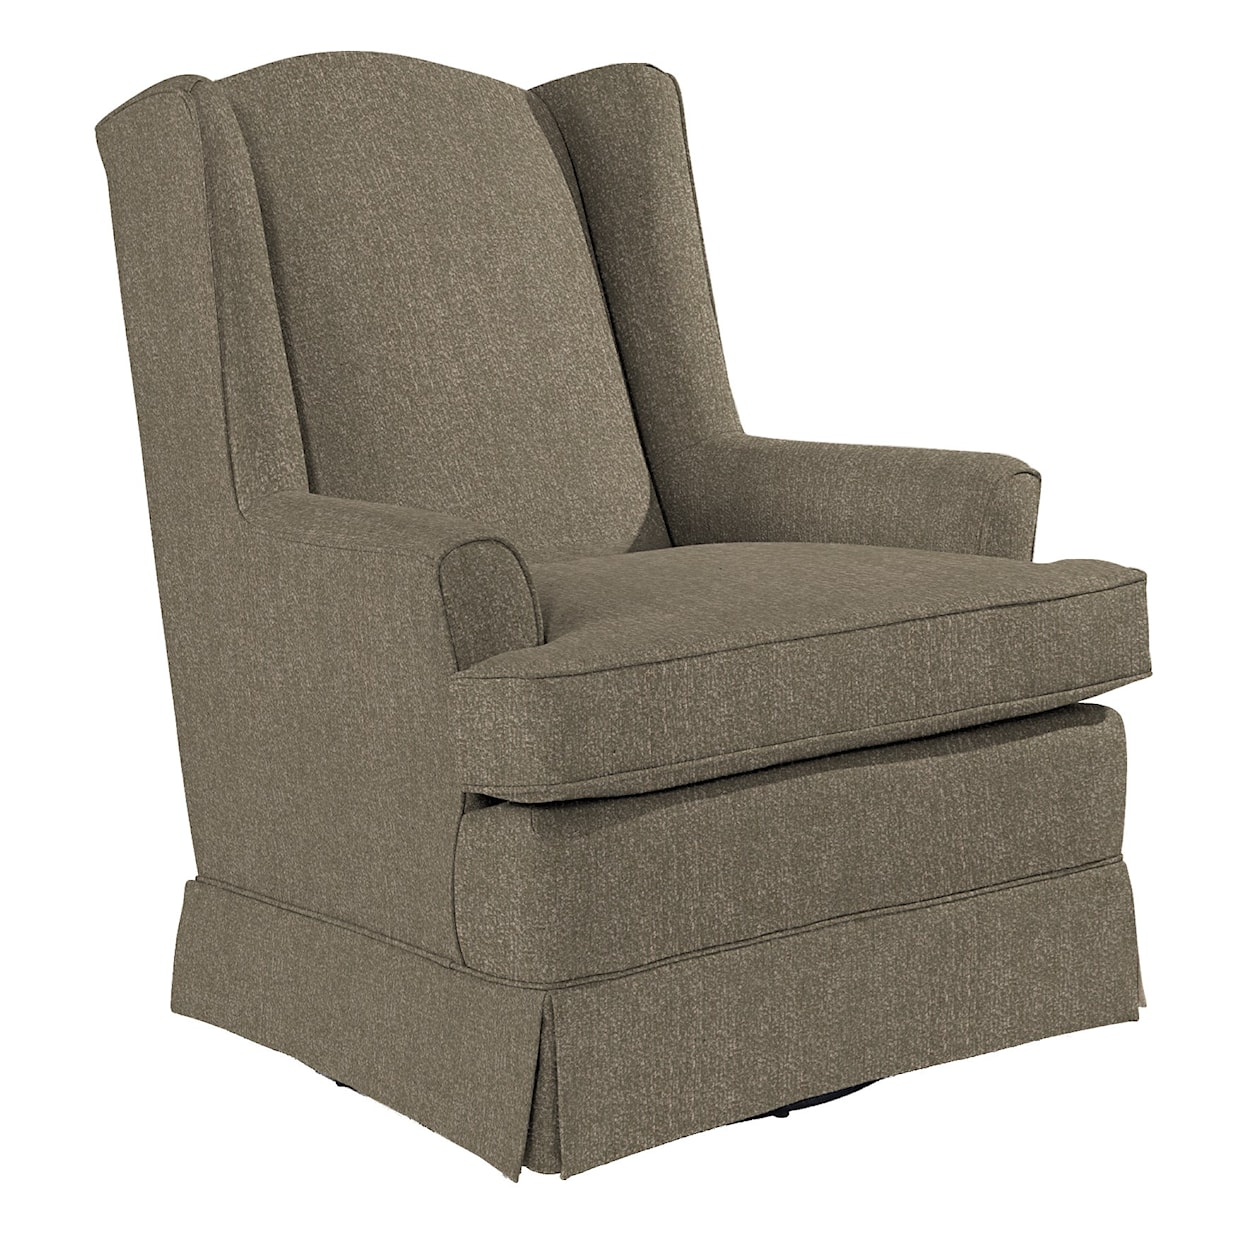 Best Home Furnishings Swivel Glide Chairs 7147 Natasha Swivel Glider ...